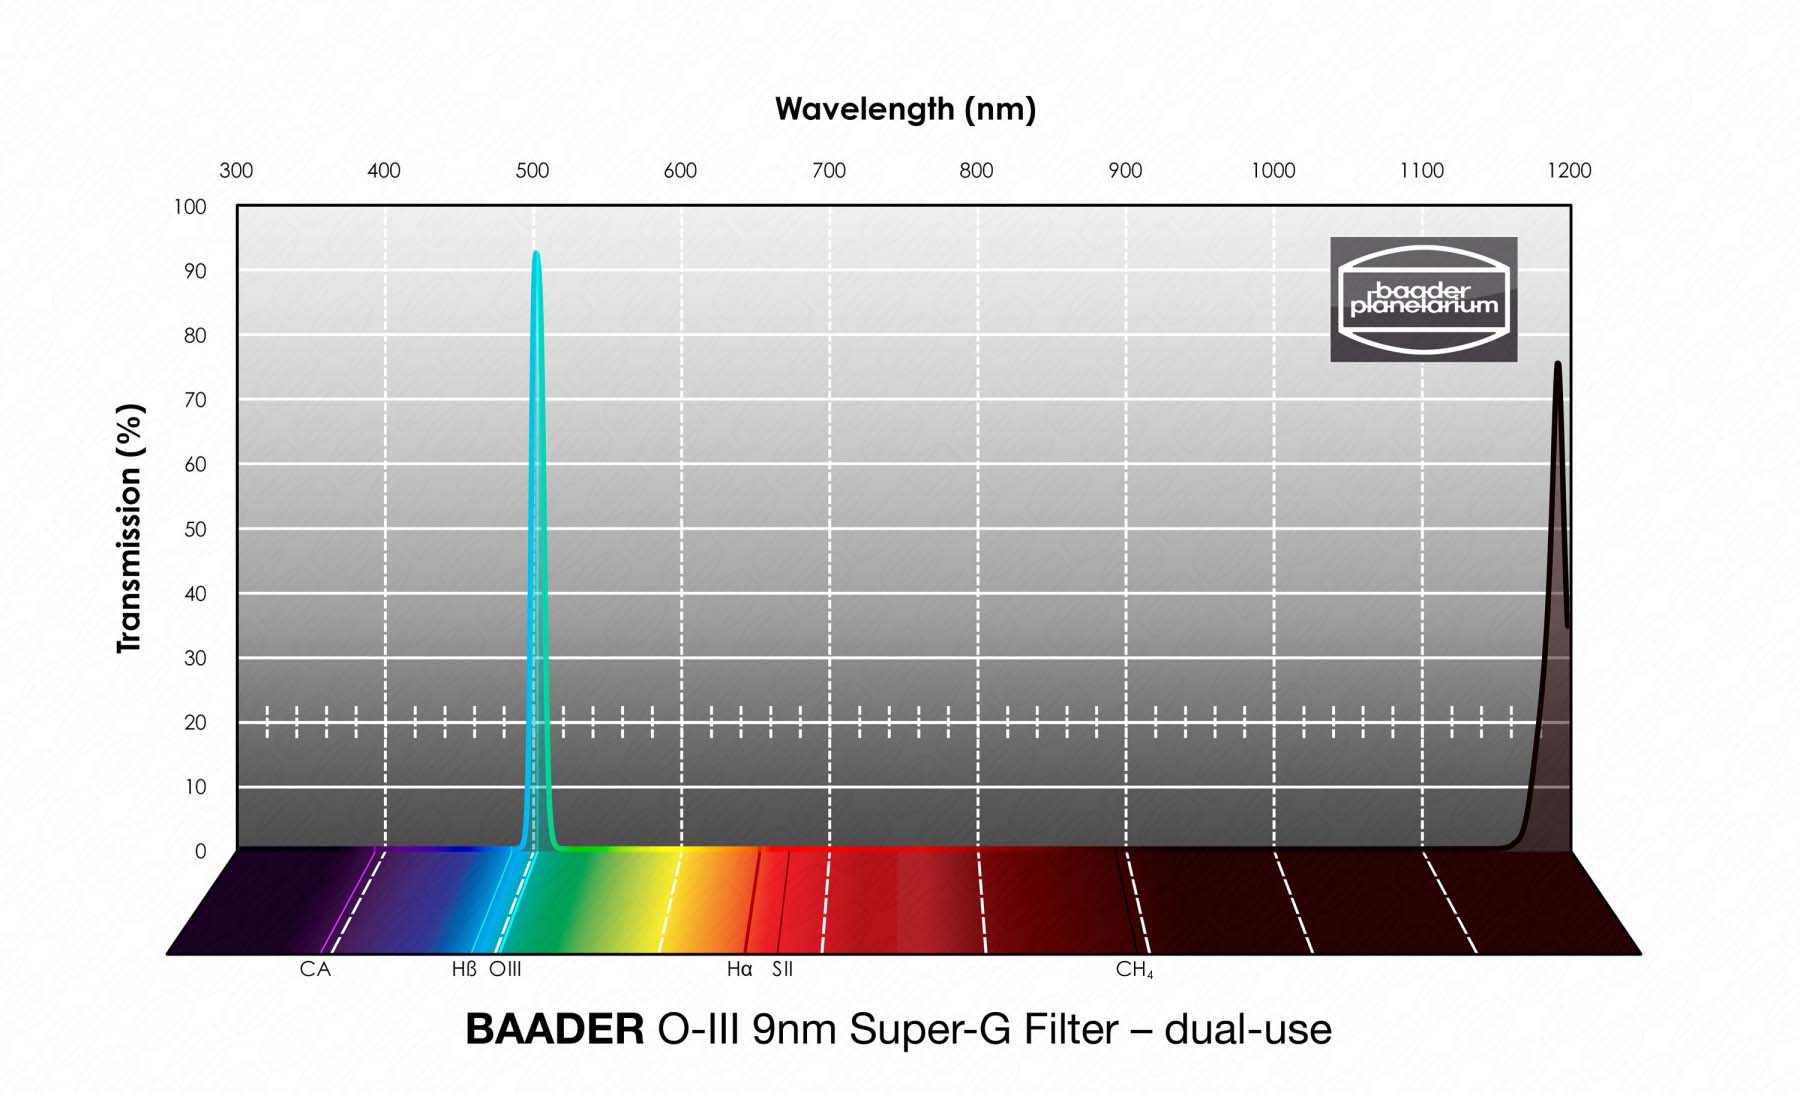 Baader O-III Super-G Filter Wavelength